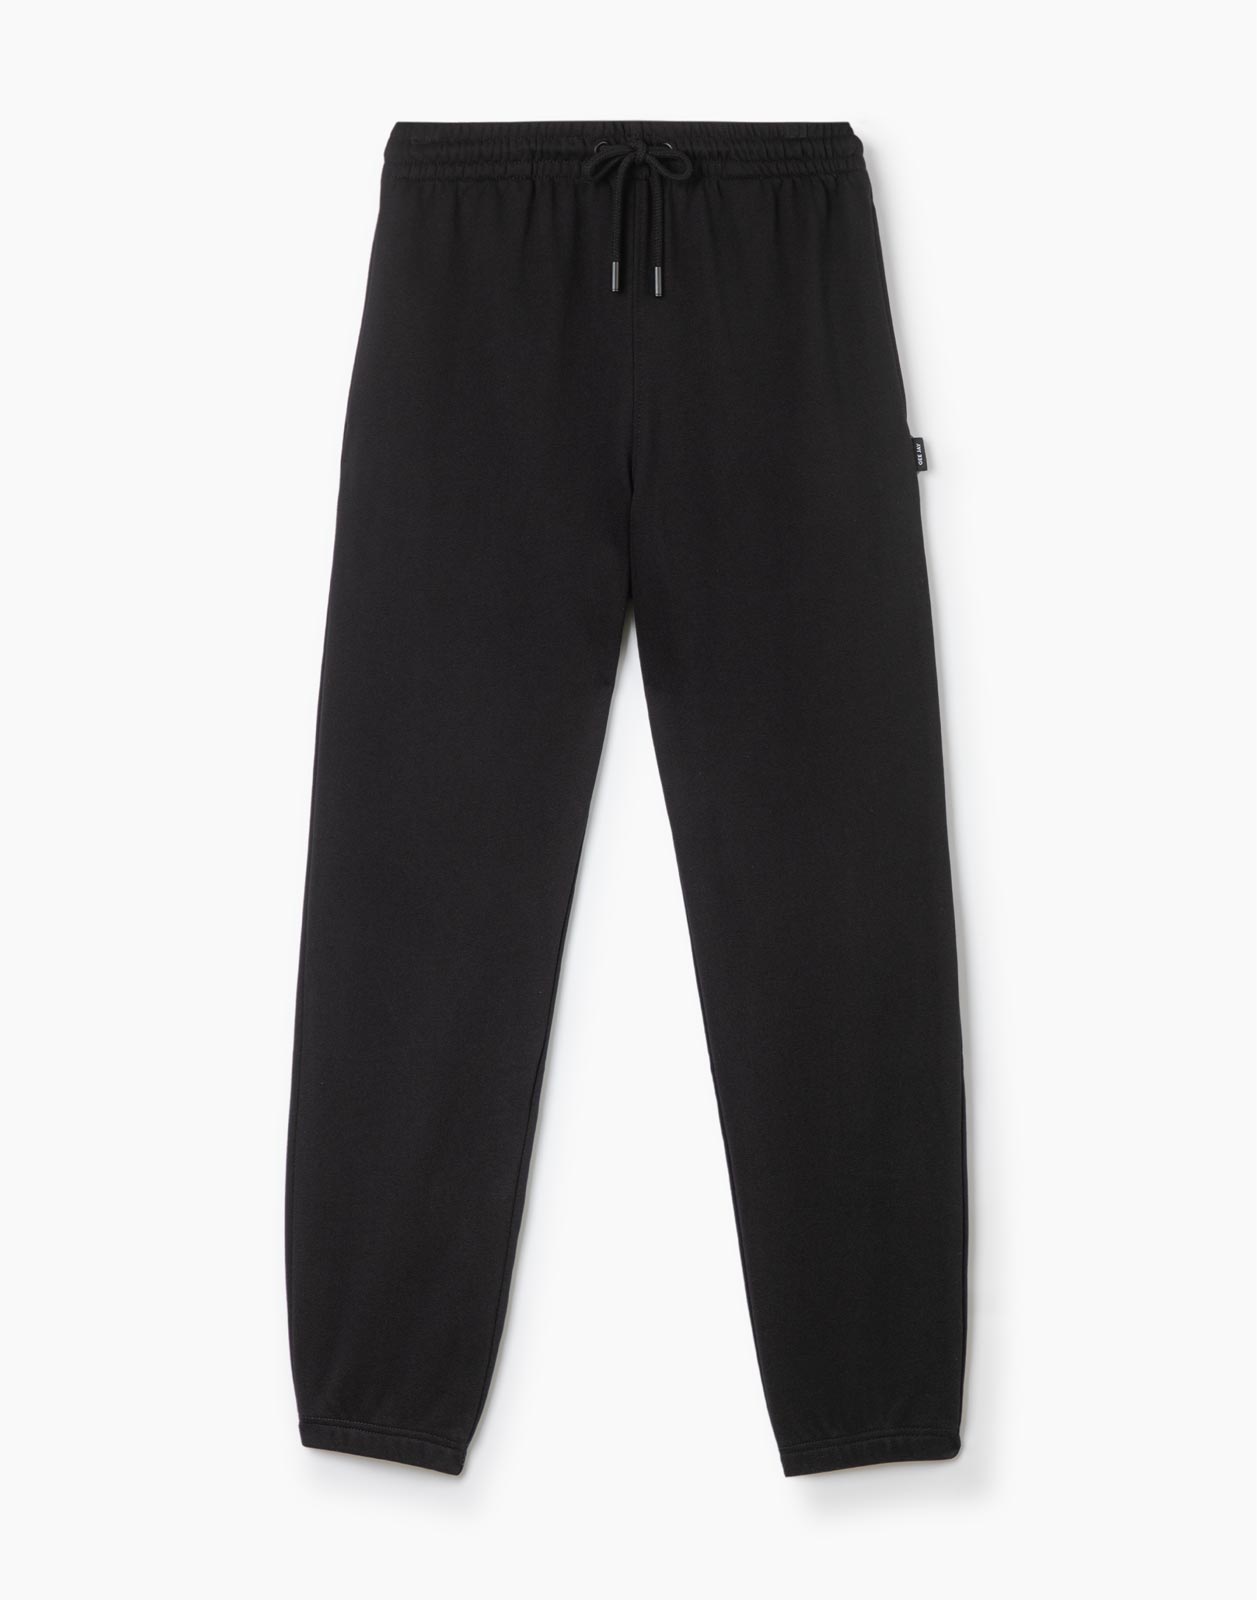 Спортивные брюки мужские Gloria Jeans BAC011399 черные S/182